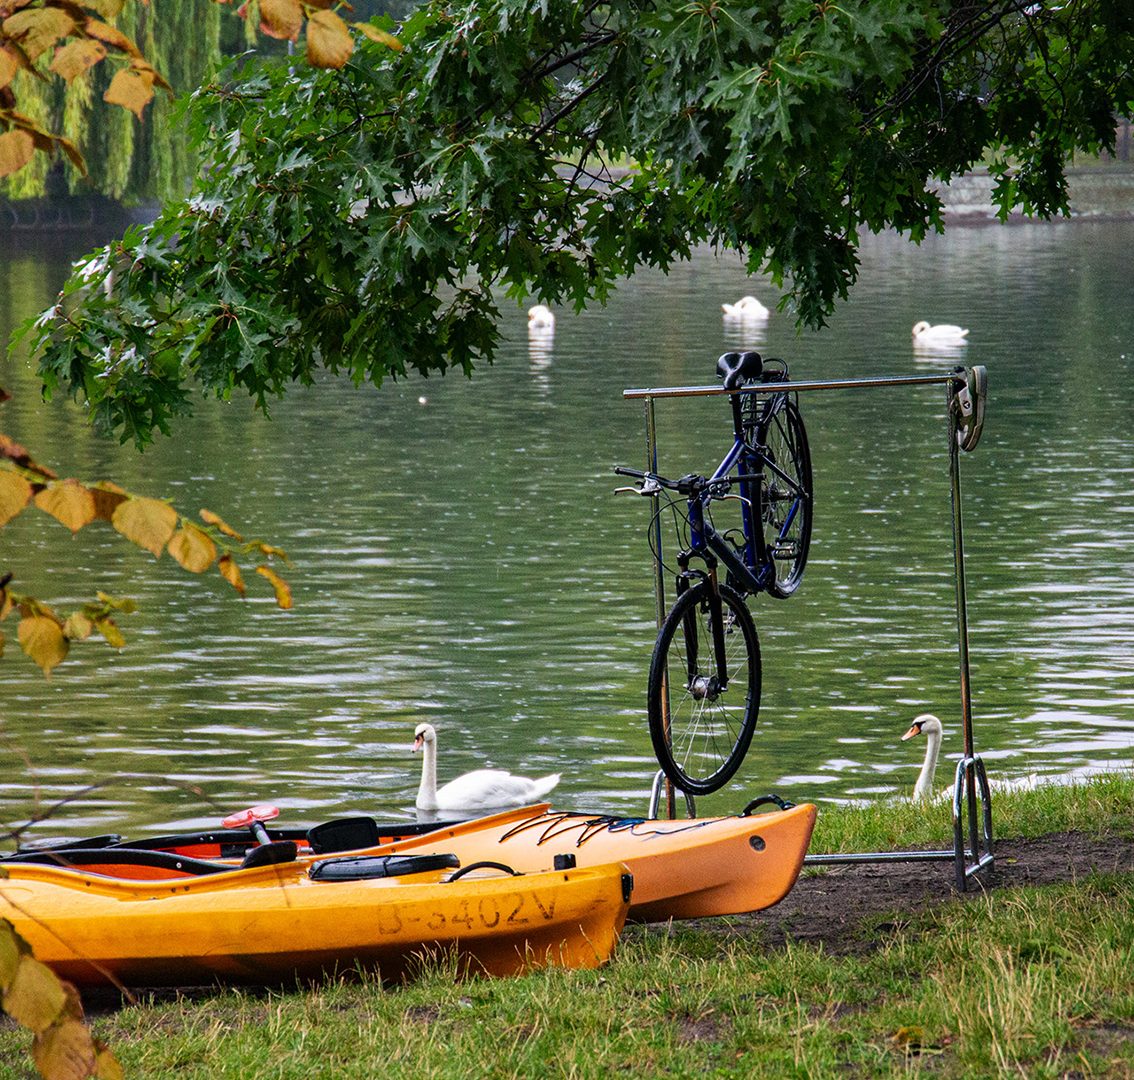 Stillleben am Rande des Landwehrkanals: Zwei Kajaks, Schwäne sowie eine gefundene Kleiderstange an der ein gefundenes Fahrrad hängt.